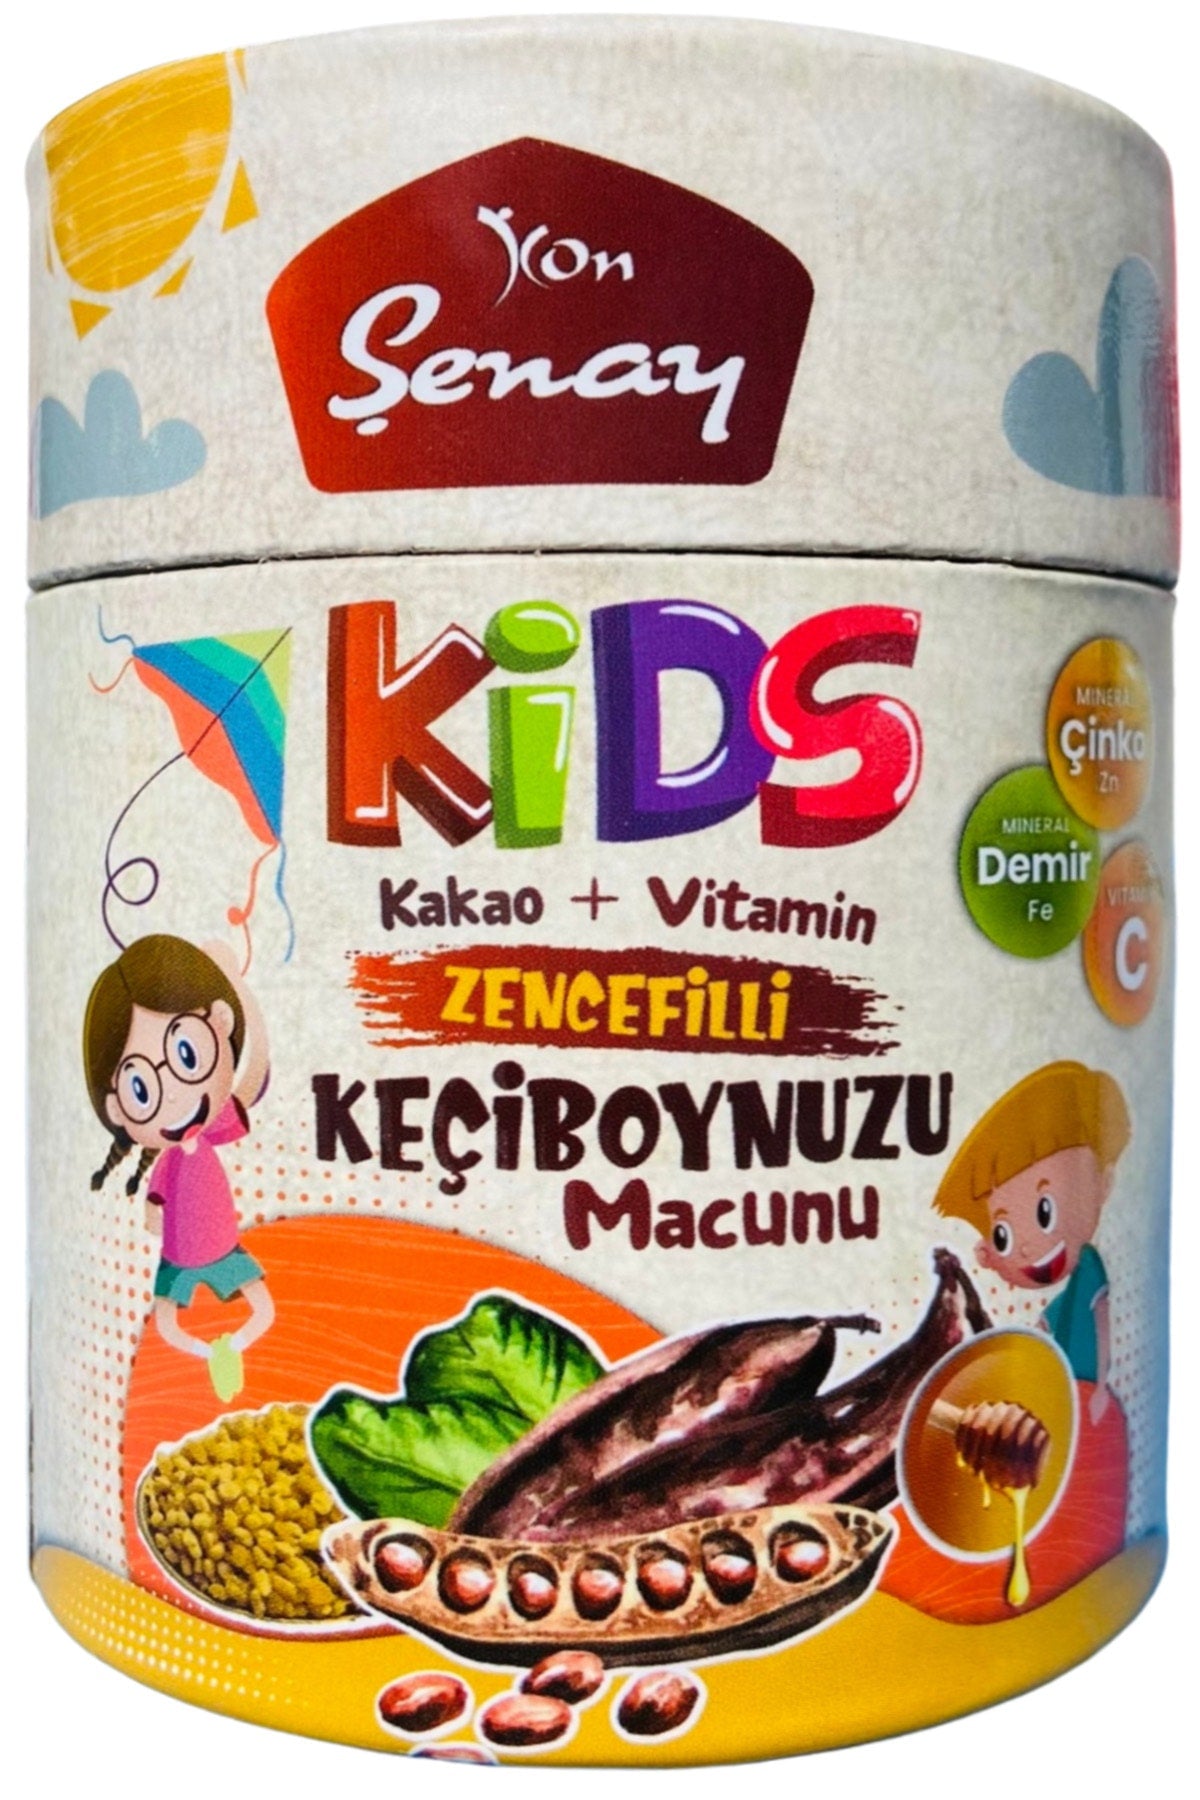 Kon Senay Kozalak macunu KIDS (Kon Senay Mélasse aux pin pour enfants KIDS)